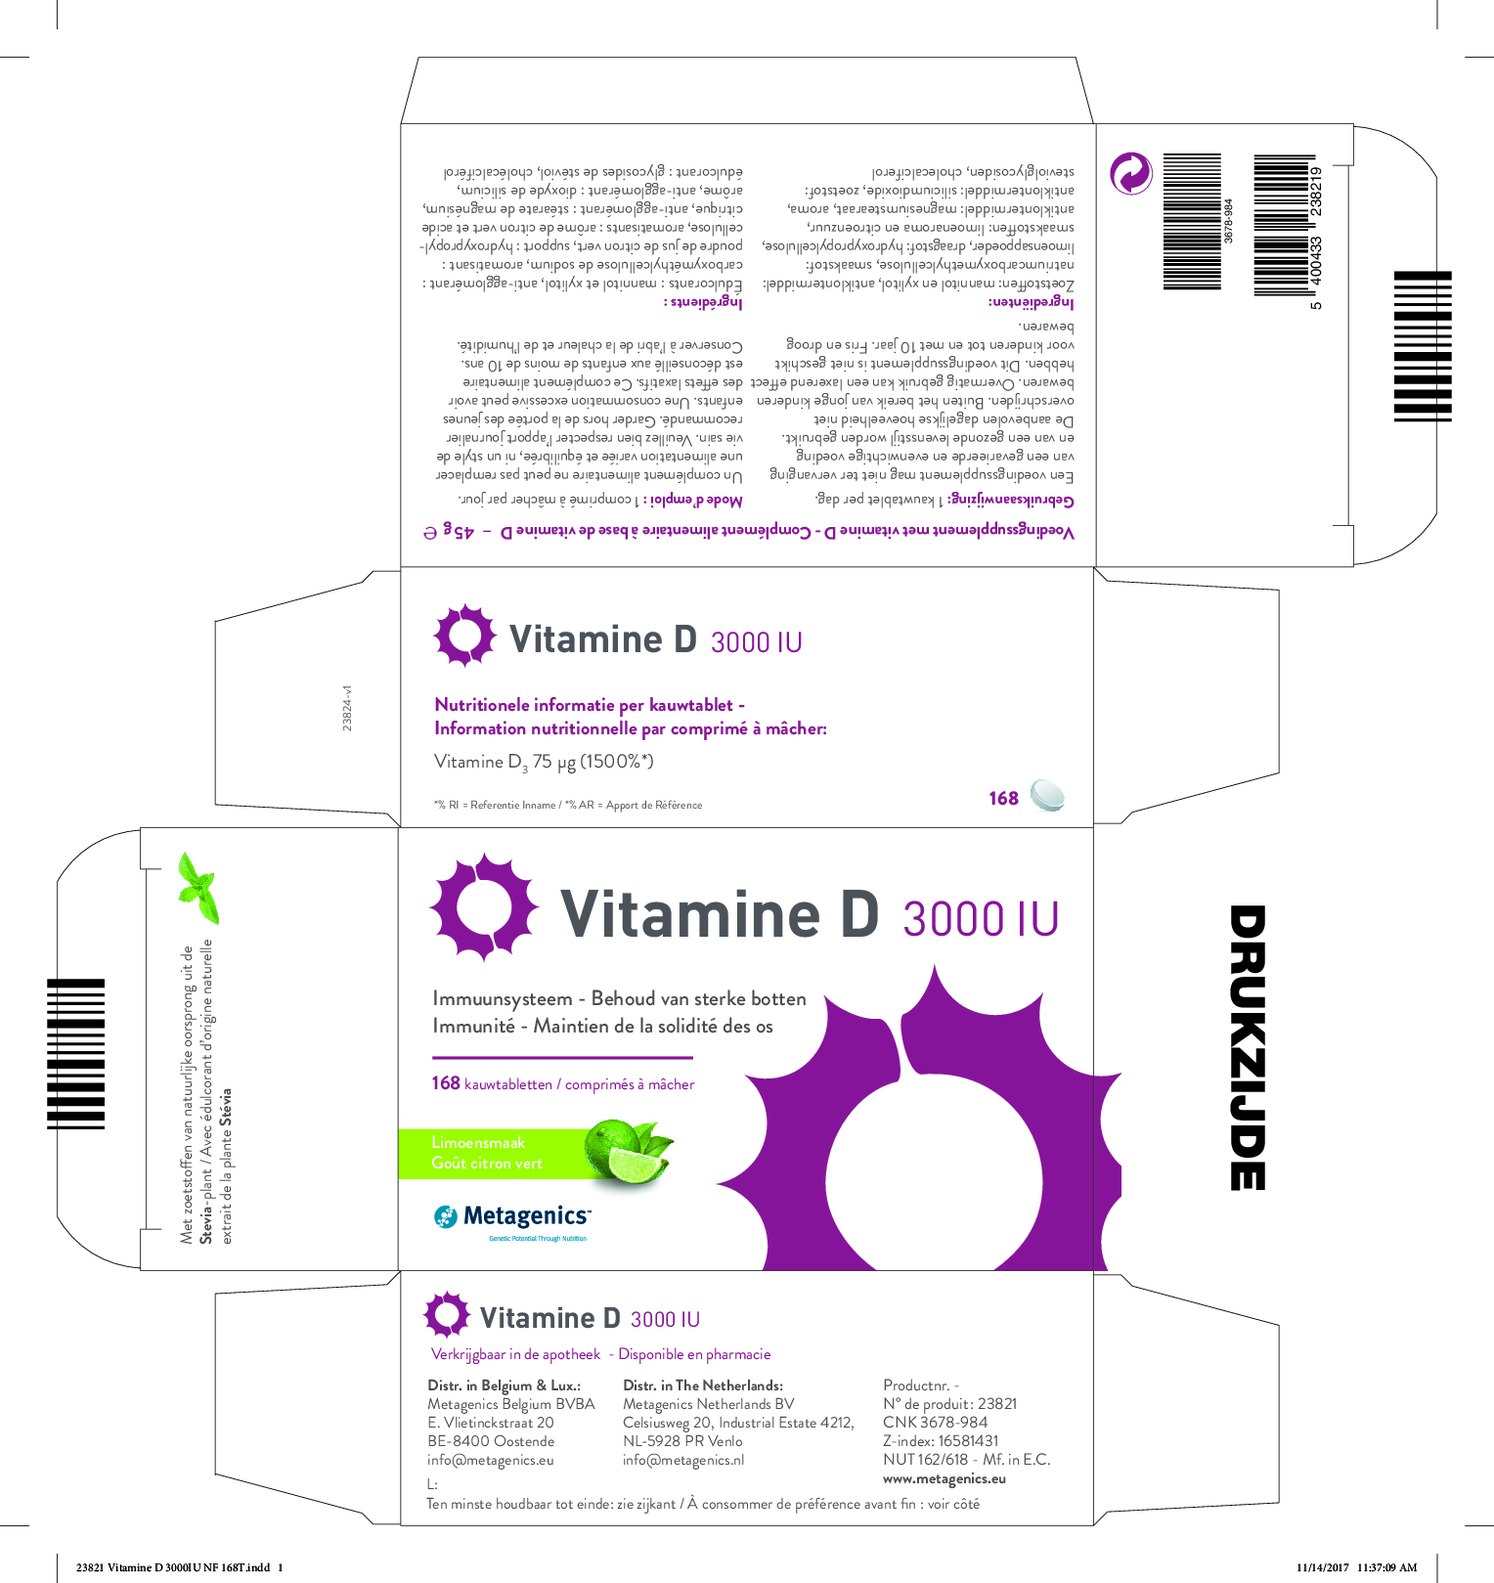 Vitamine D 3000 IU Kauwtabletten afbeelding van document #1, etiket